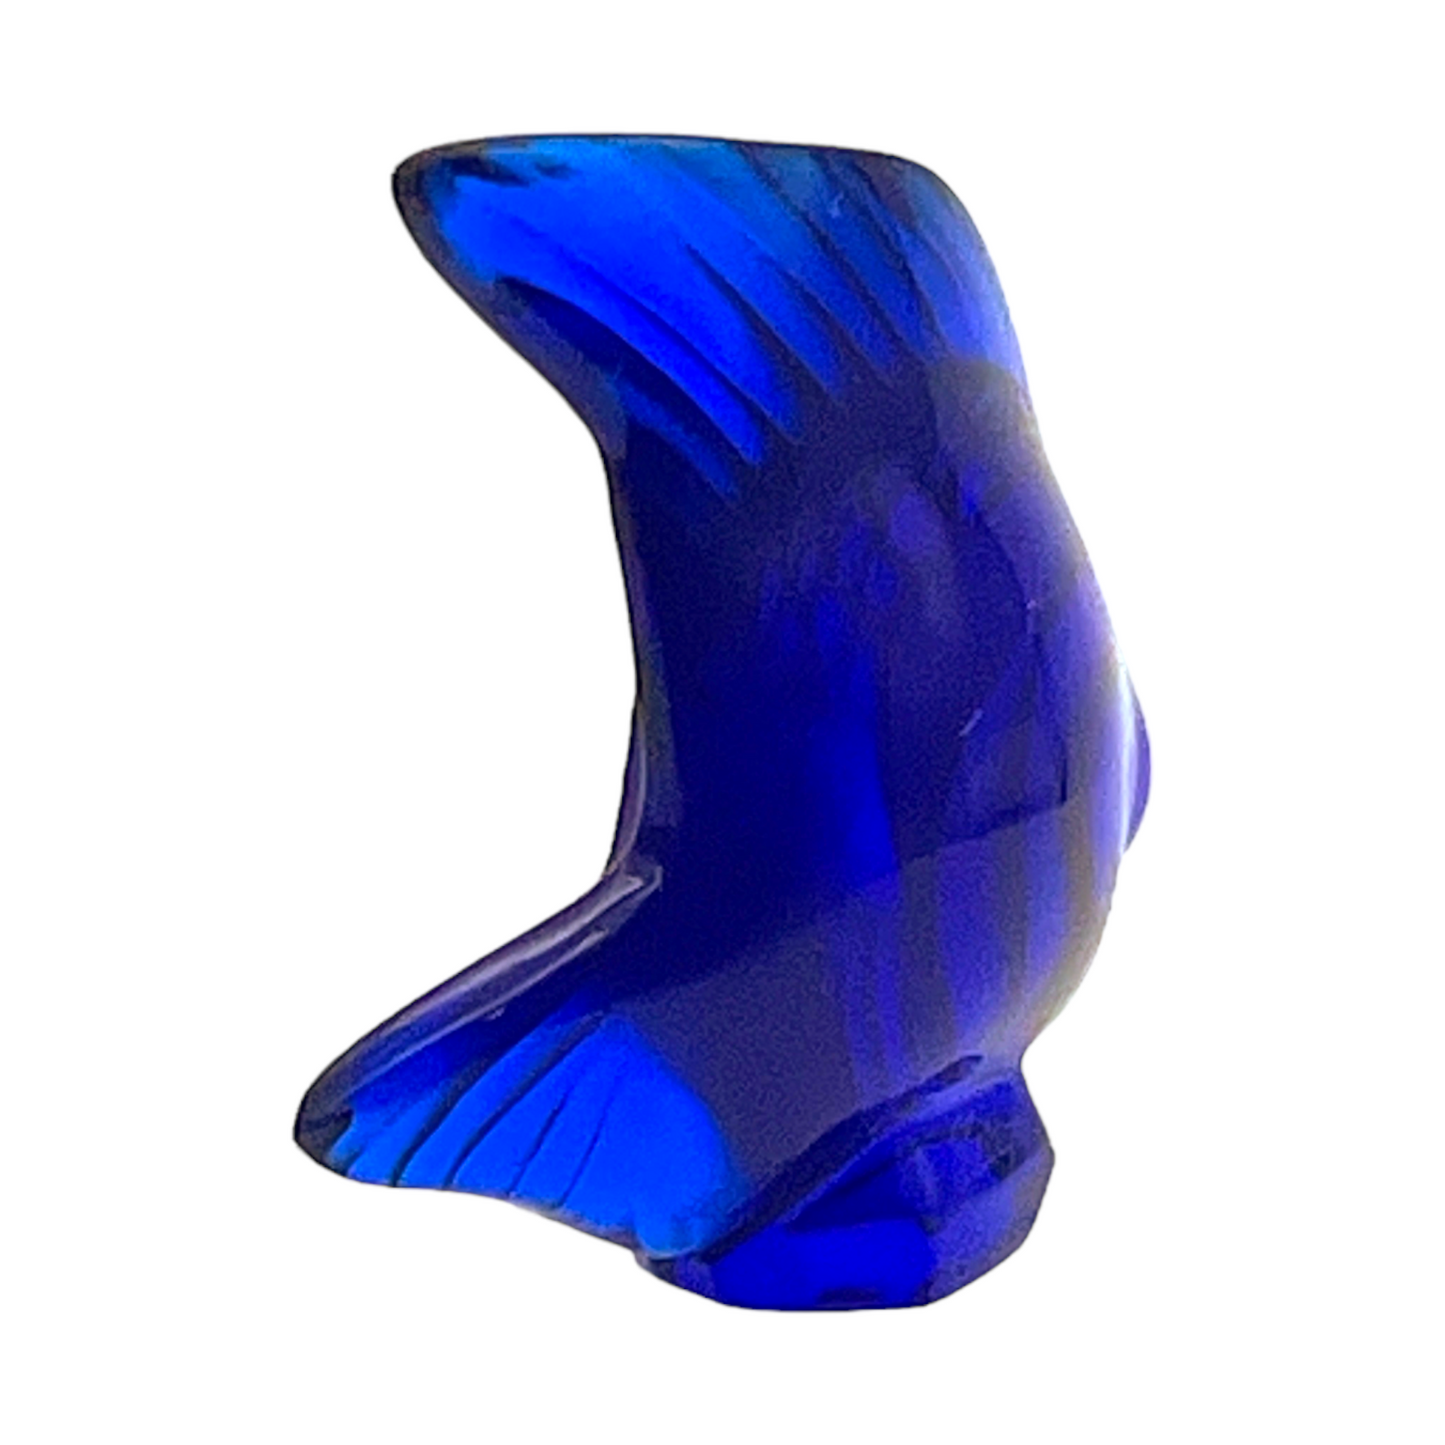 Lalique - Ferrat Blue Fish Sculpture - Signed - 2.25"